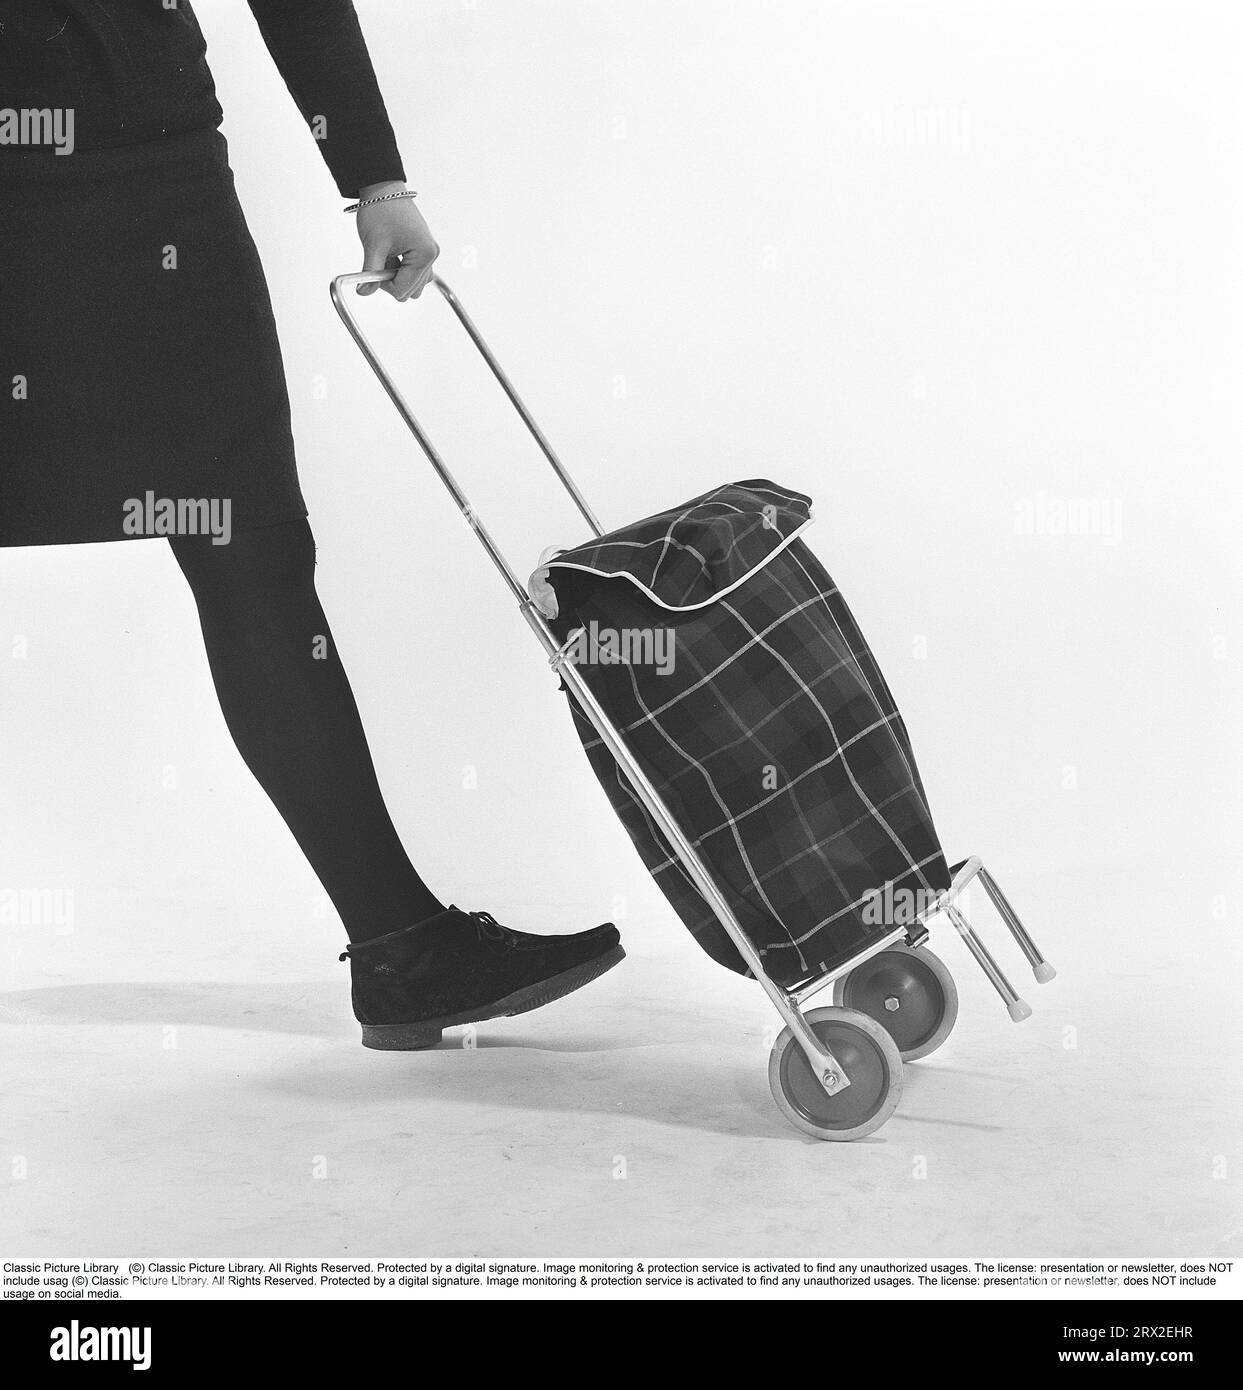 Shopping dans les années 1960 Une jeune femme utilise son chariot pour transporter ses provisions. Un article de nouveauté qui est venu à l'origine des Etats-Unis. Suède 1966 Kristoffersson ref CY18-7 Banque D'Images